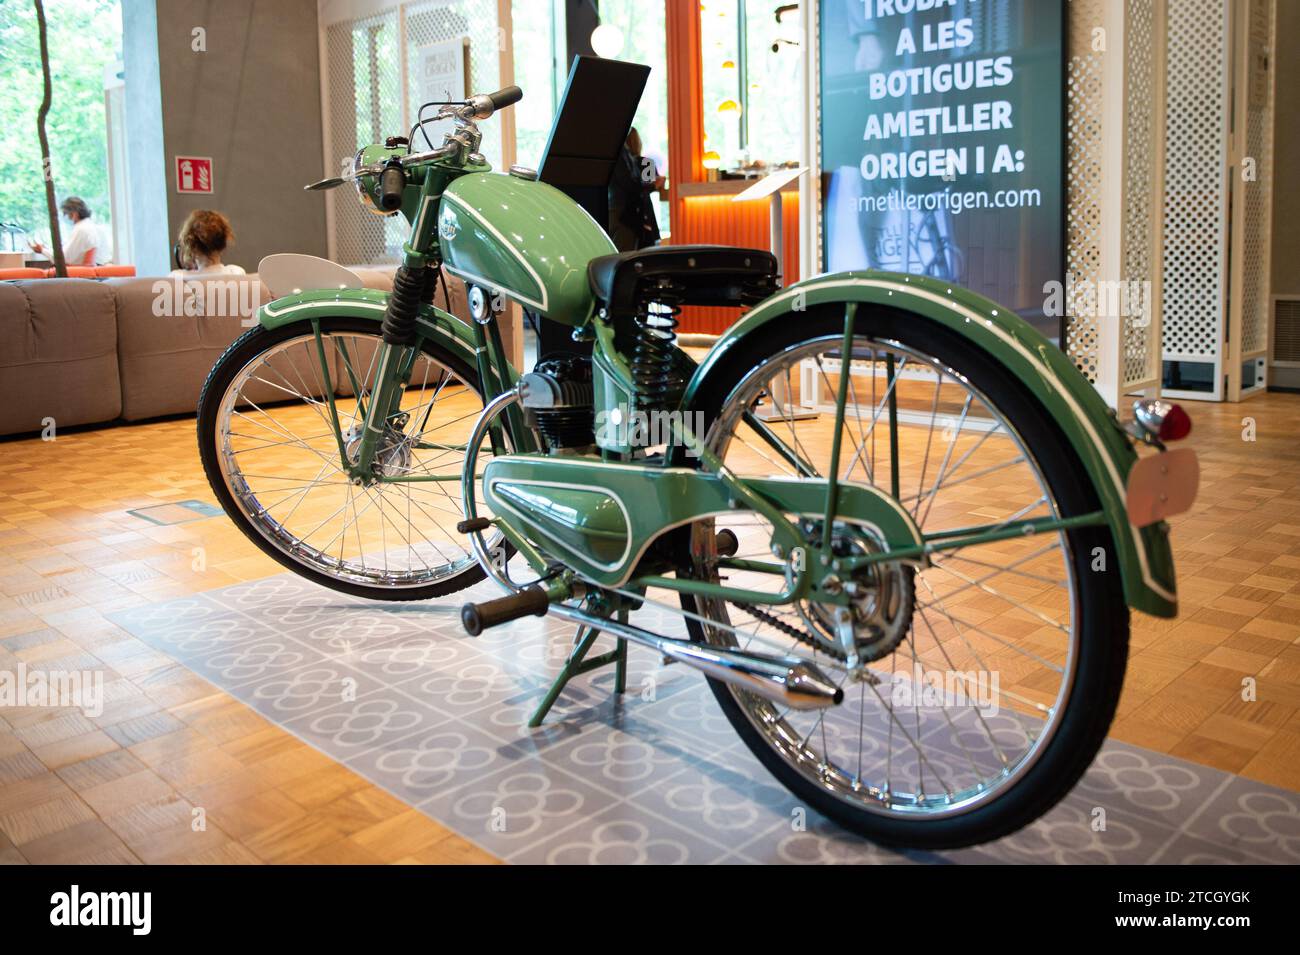 Barcellona, 06/08/2021. Mostra di motociclette d'epoca presso Seat. Foto: Inés Baucells. ArchDC. Crediti: Album / Archivo ABC / Inés Baucells Foto Stock